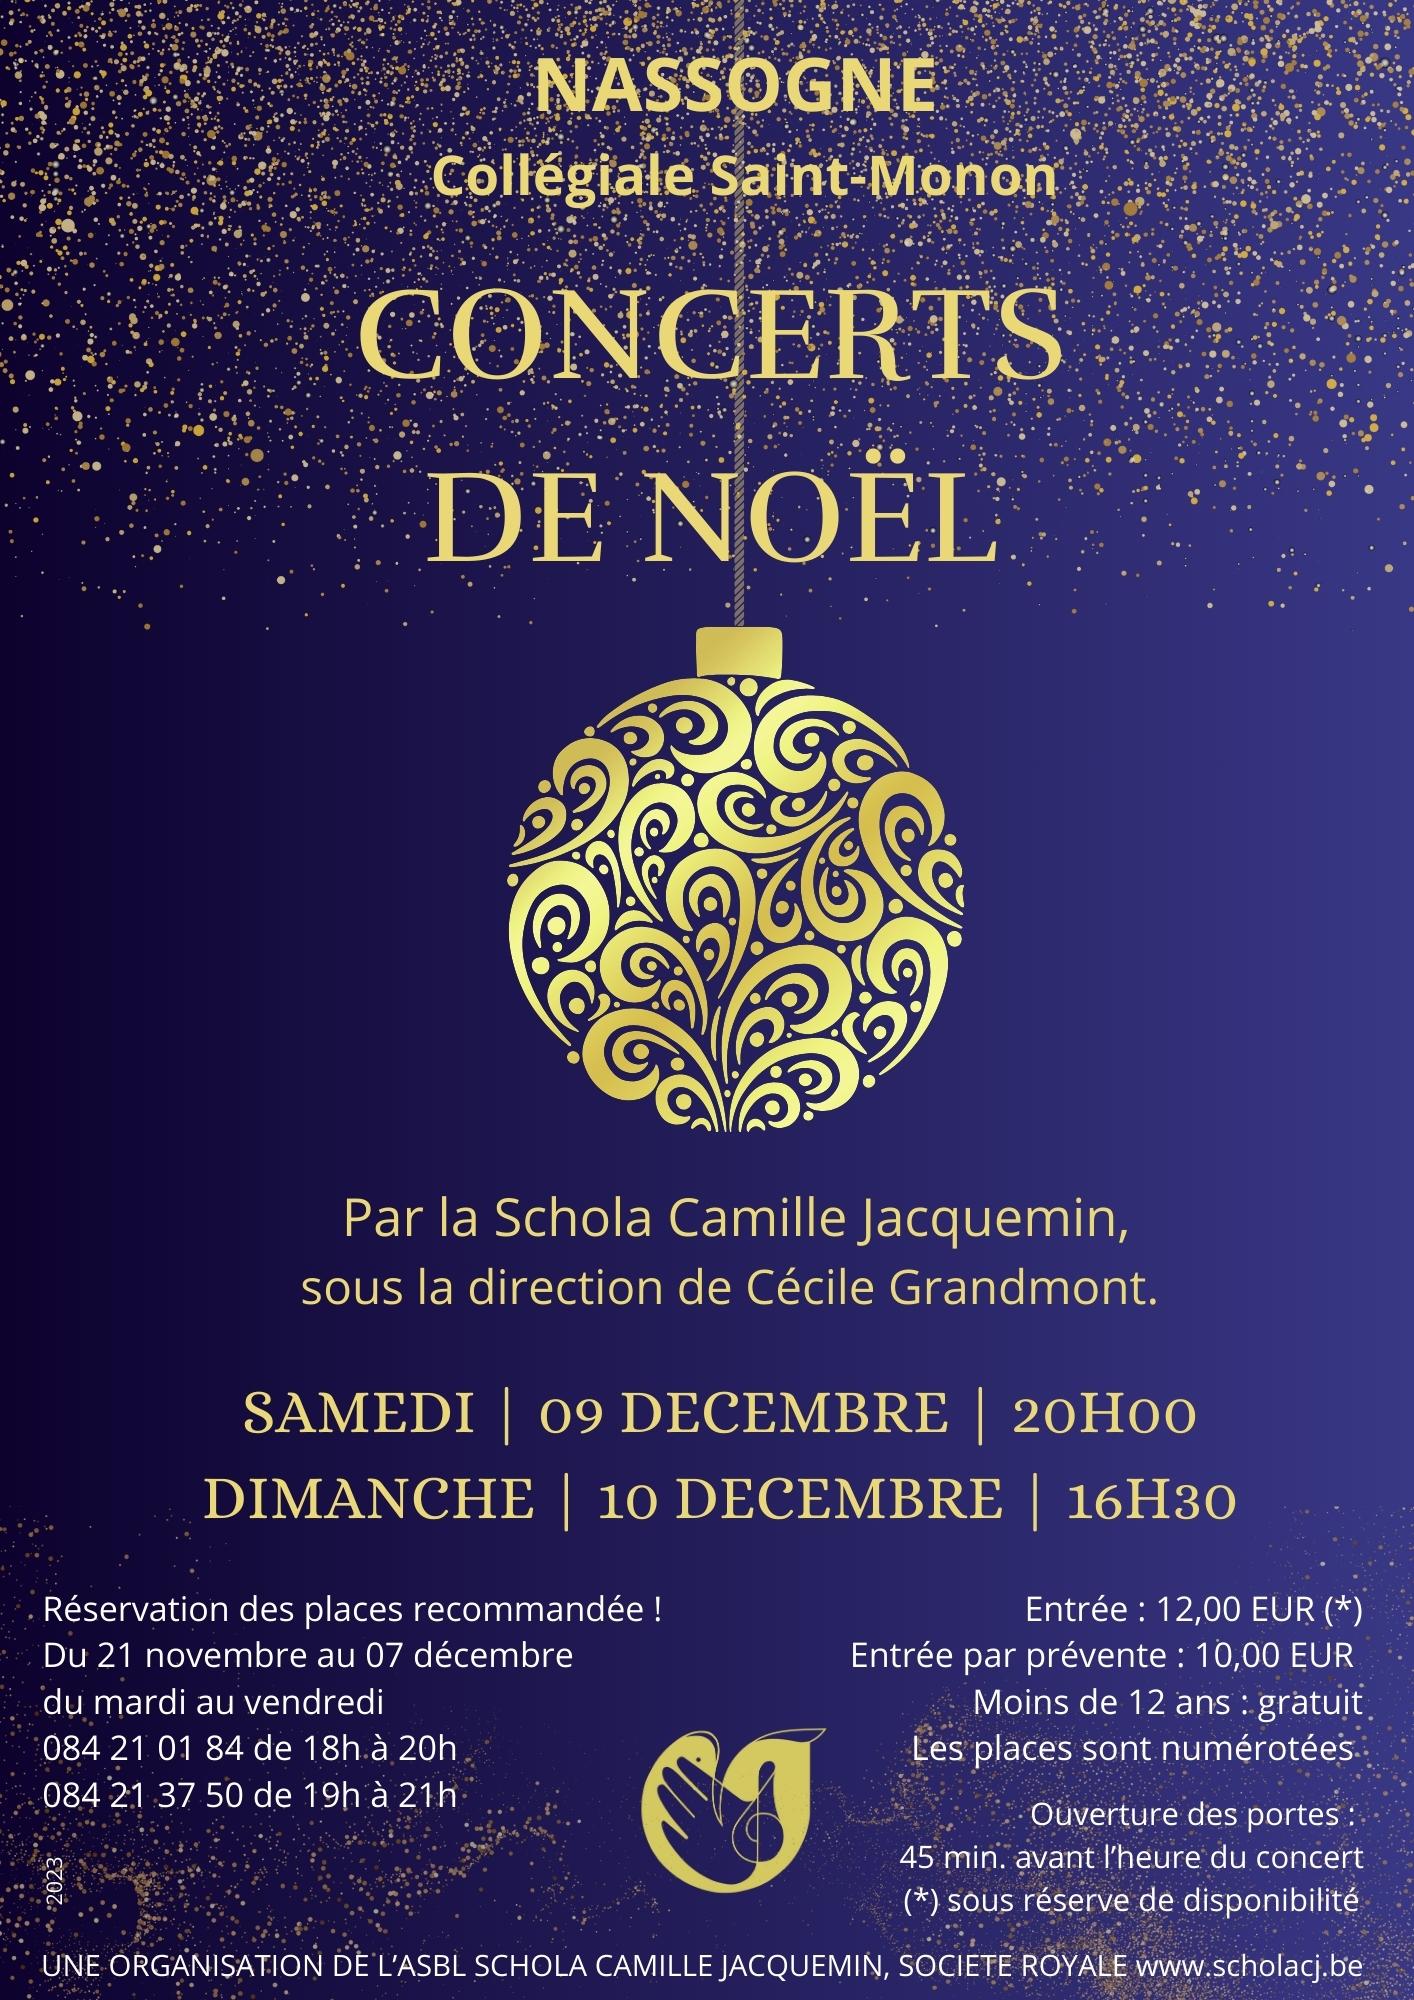 Double concert de Noël de la Schola Camille Jacquemin, les 9 et 10 décembre 2023 à Nassogne